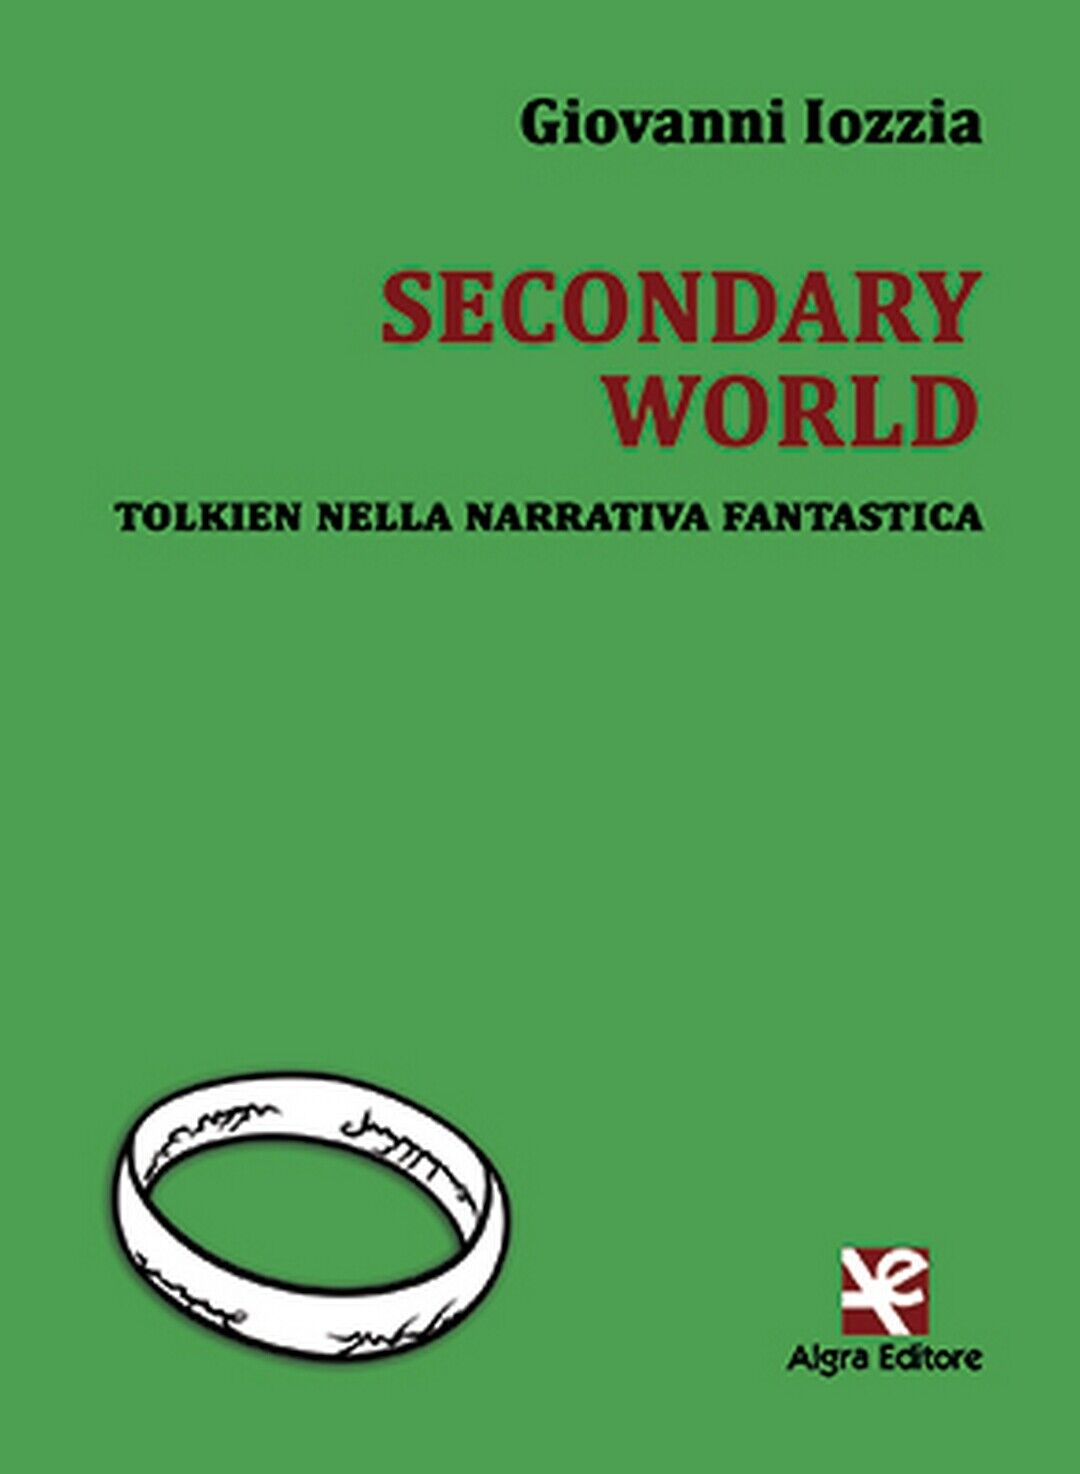 Secondary World. Tolkien nella narrativa fantastica  di Giovanni Iozzia,  Algra  libro usato